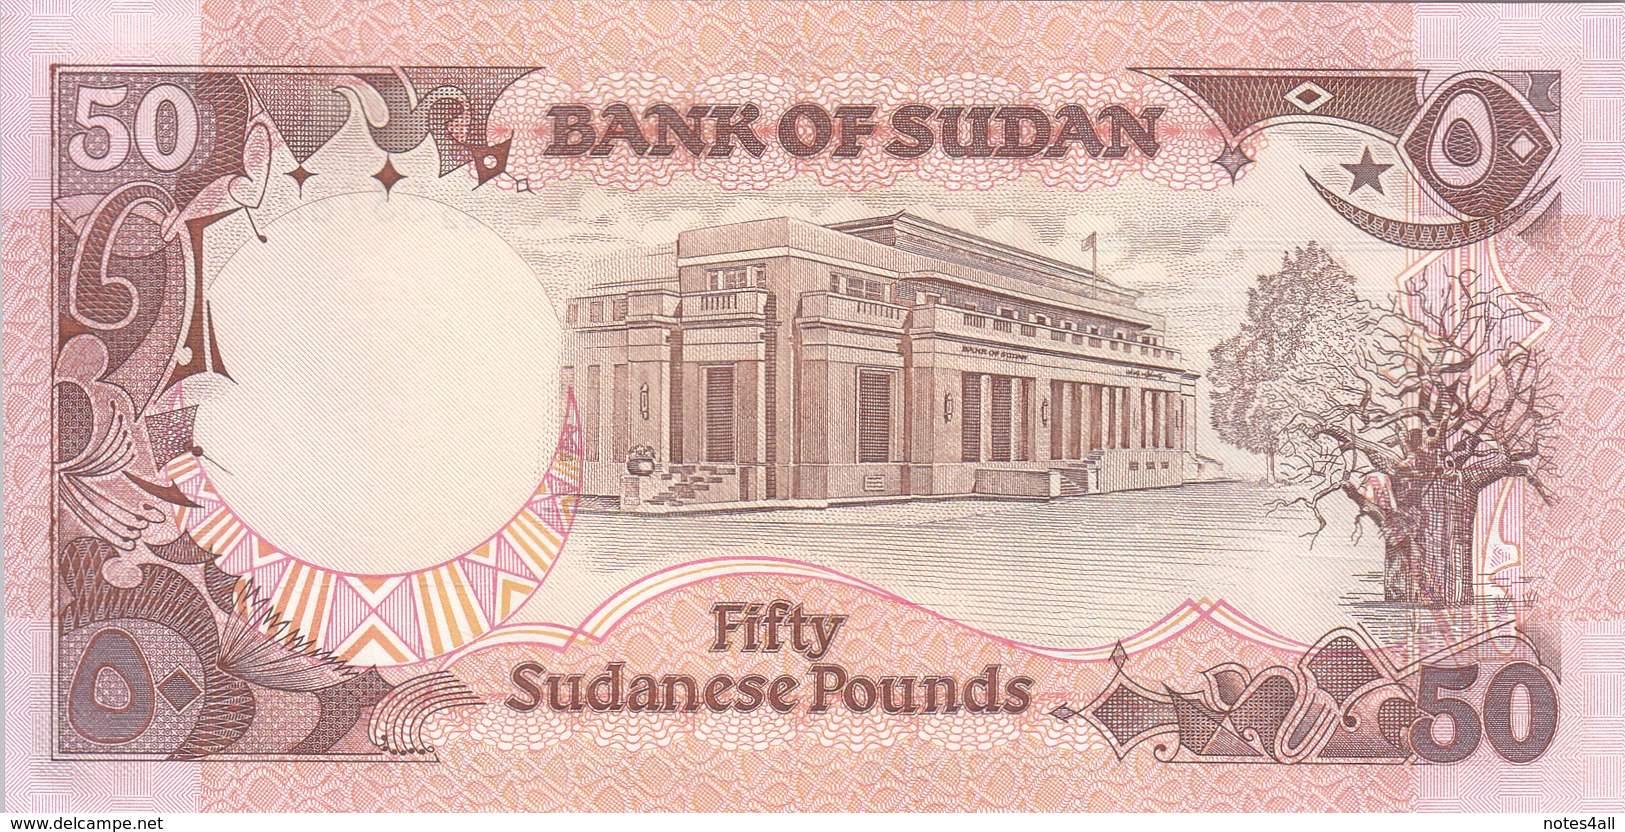 SUDAN 50 POUNDS 1991 P-48 UNC */* - Sudan